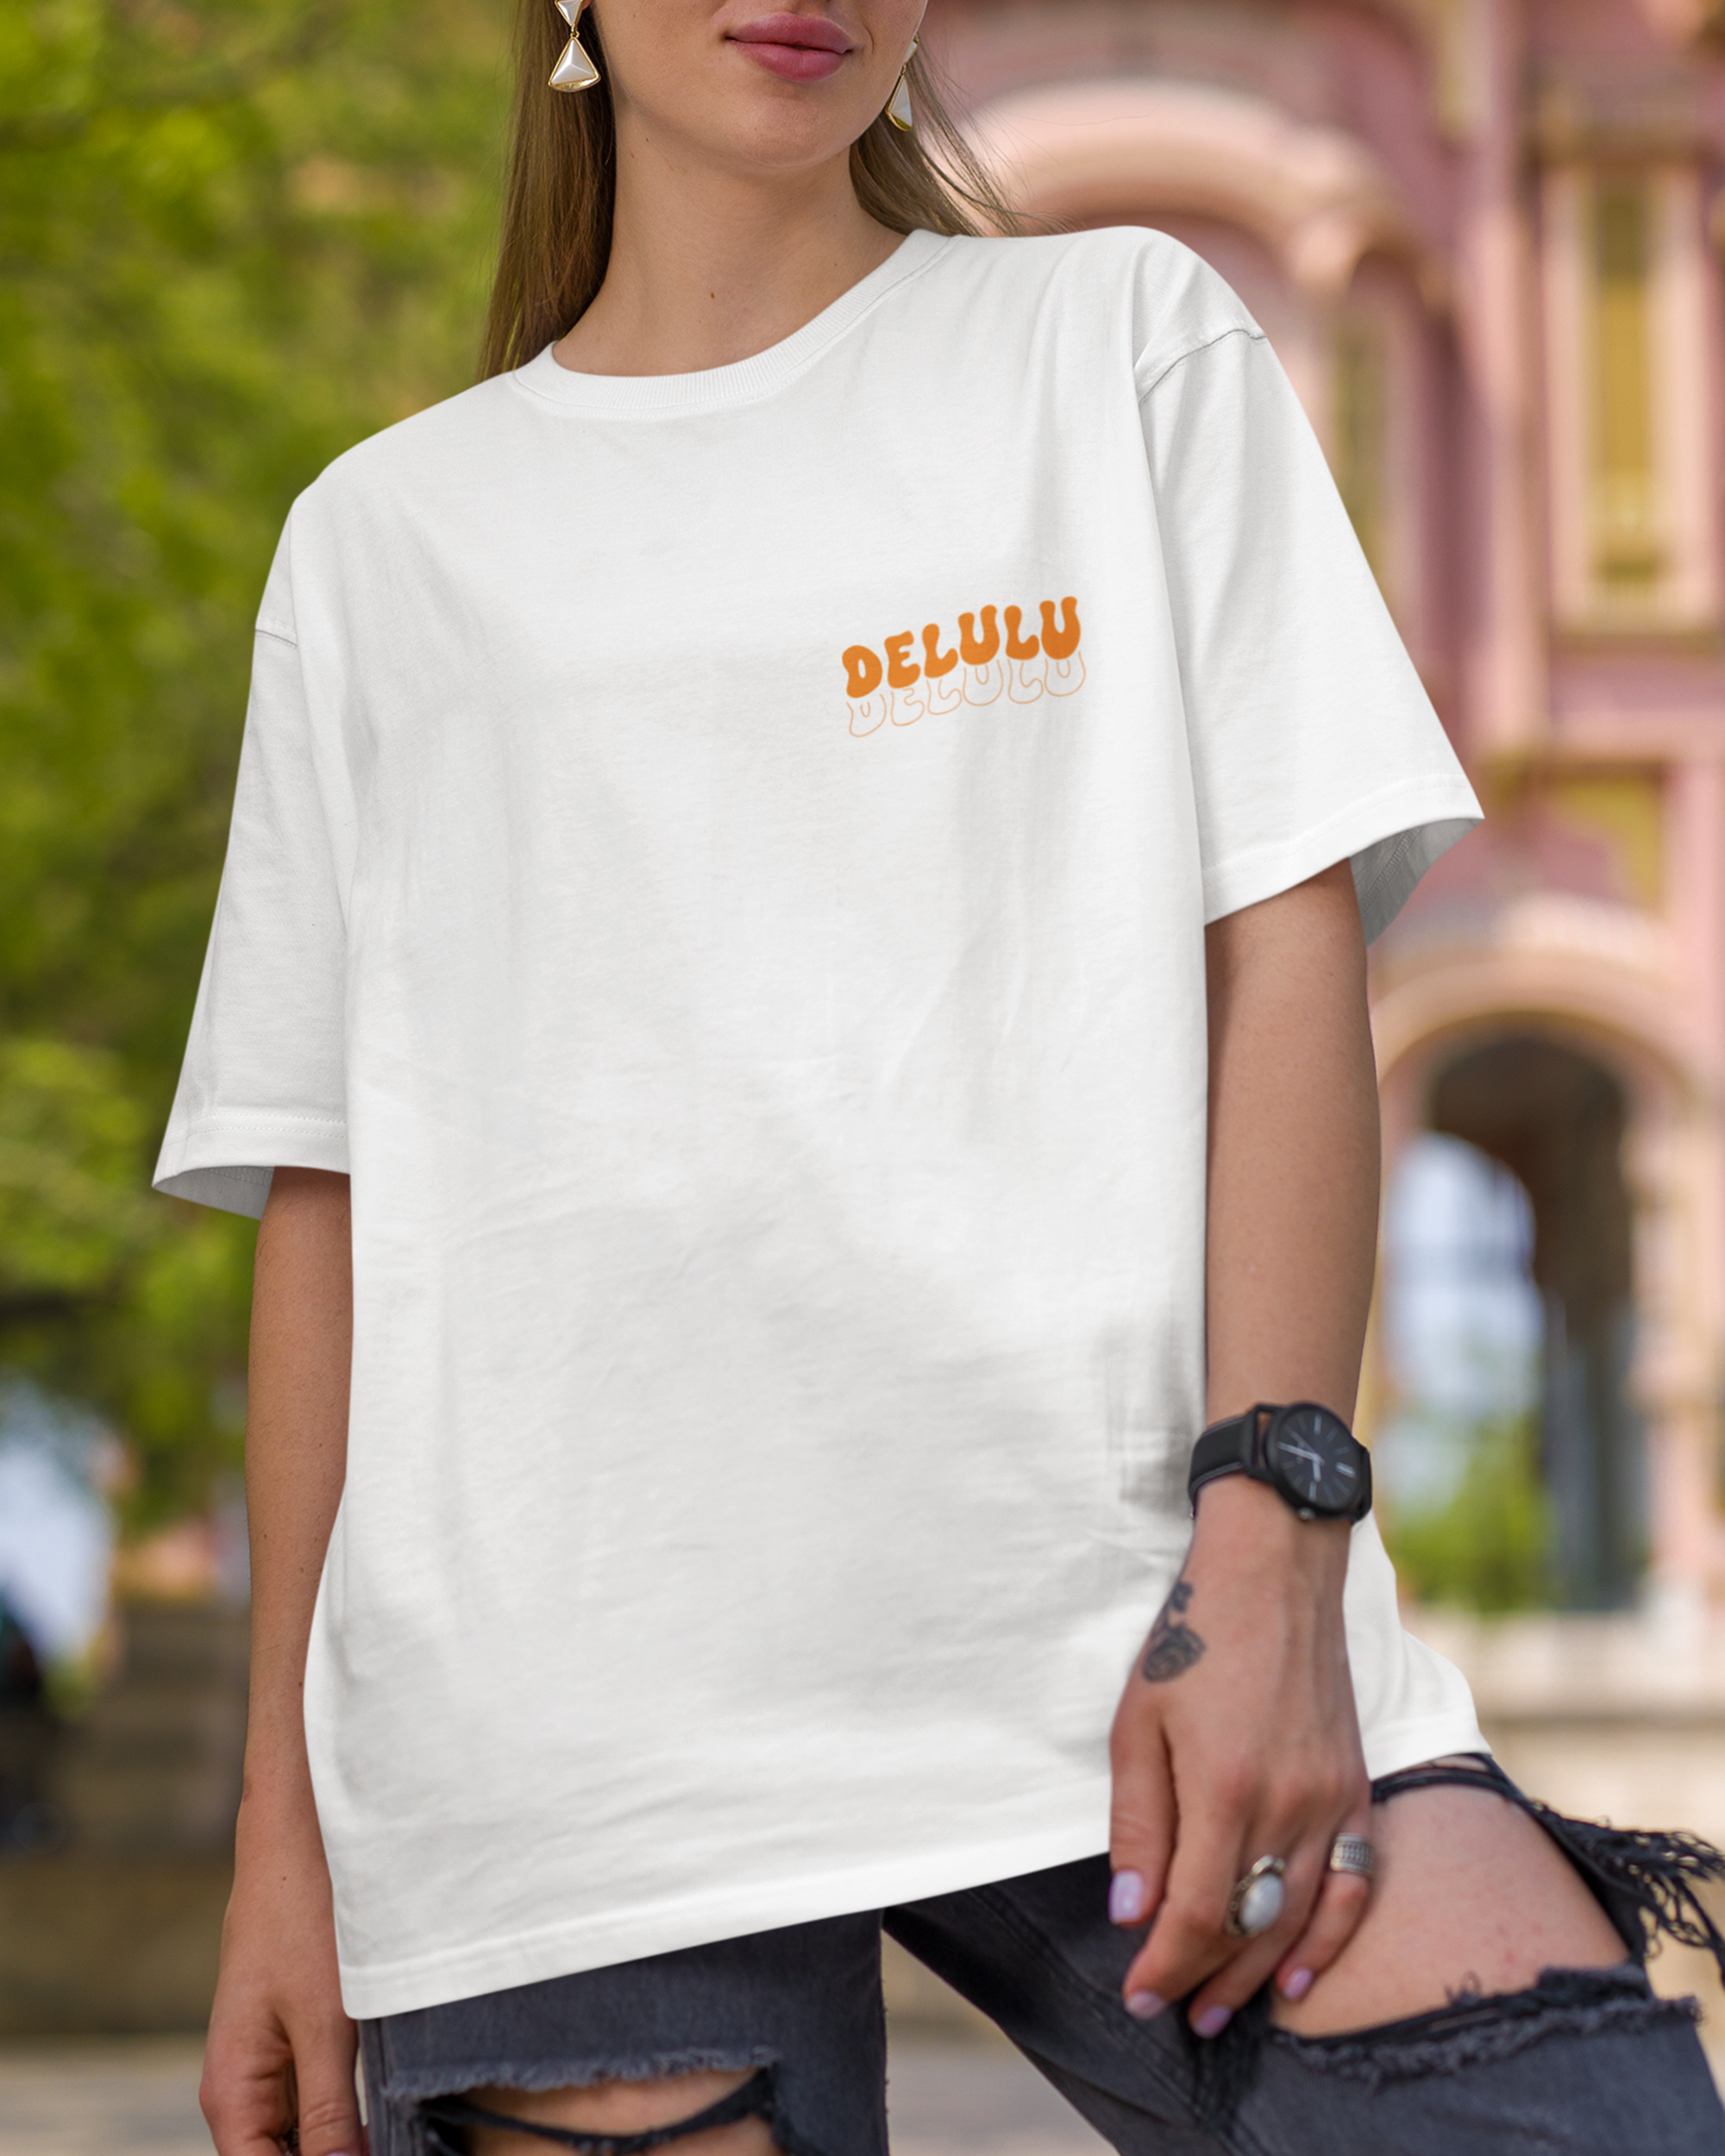 Delulu Is The Only Solulu Oversized Tshirt